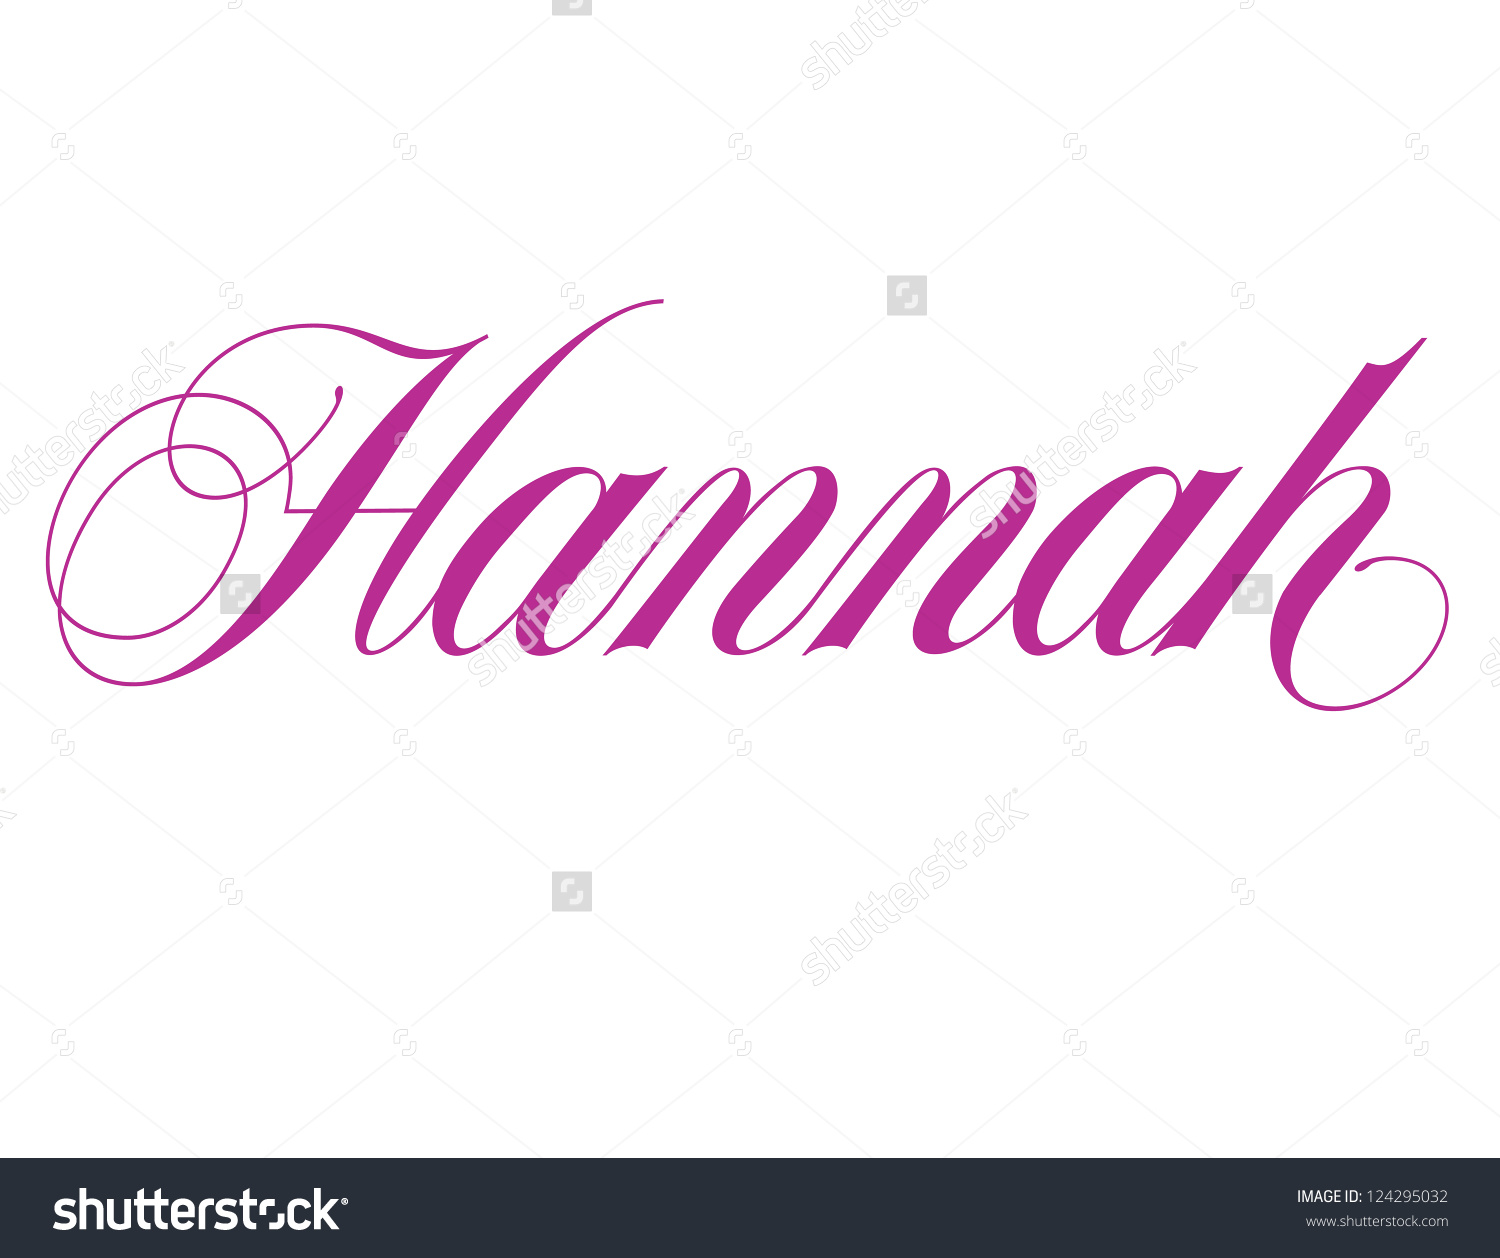 Hannah clipart - Clipground